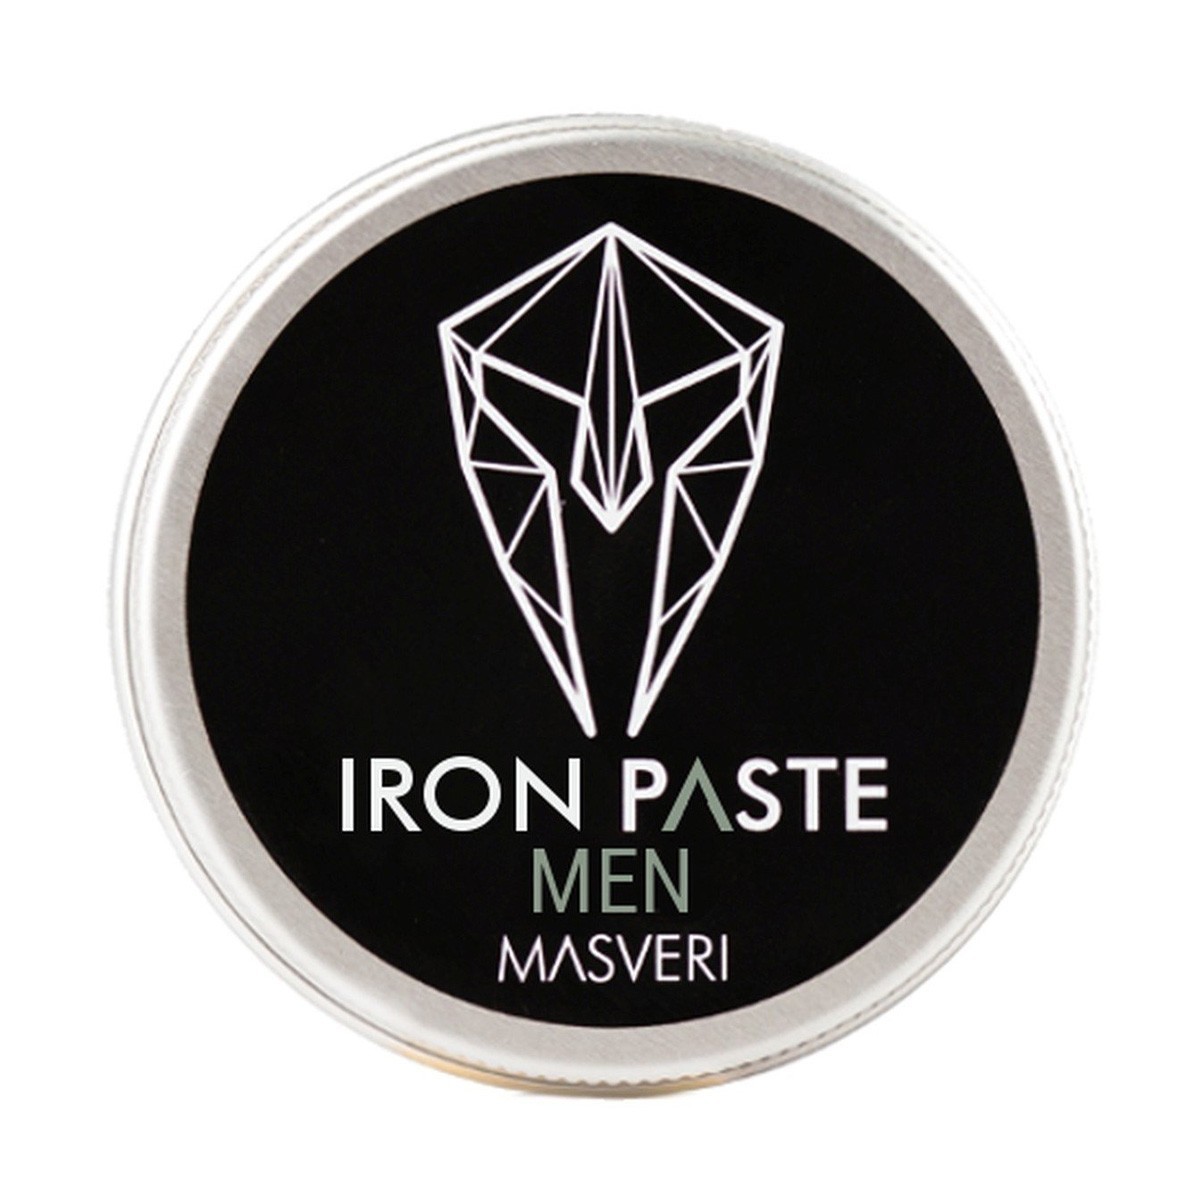 Masveri Iron Paste Men pasta do włosów o matowym wykończeniu, 100ml